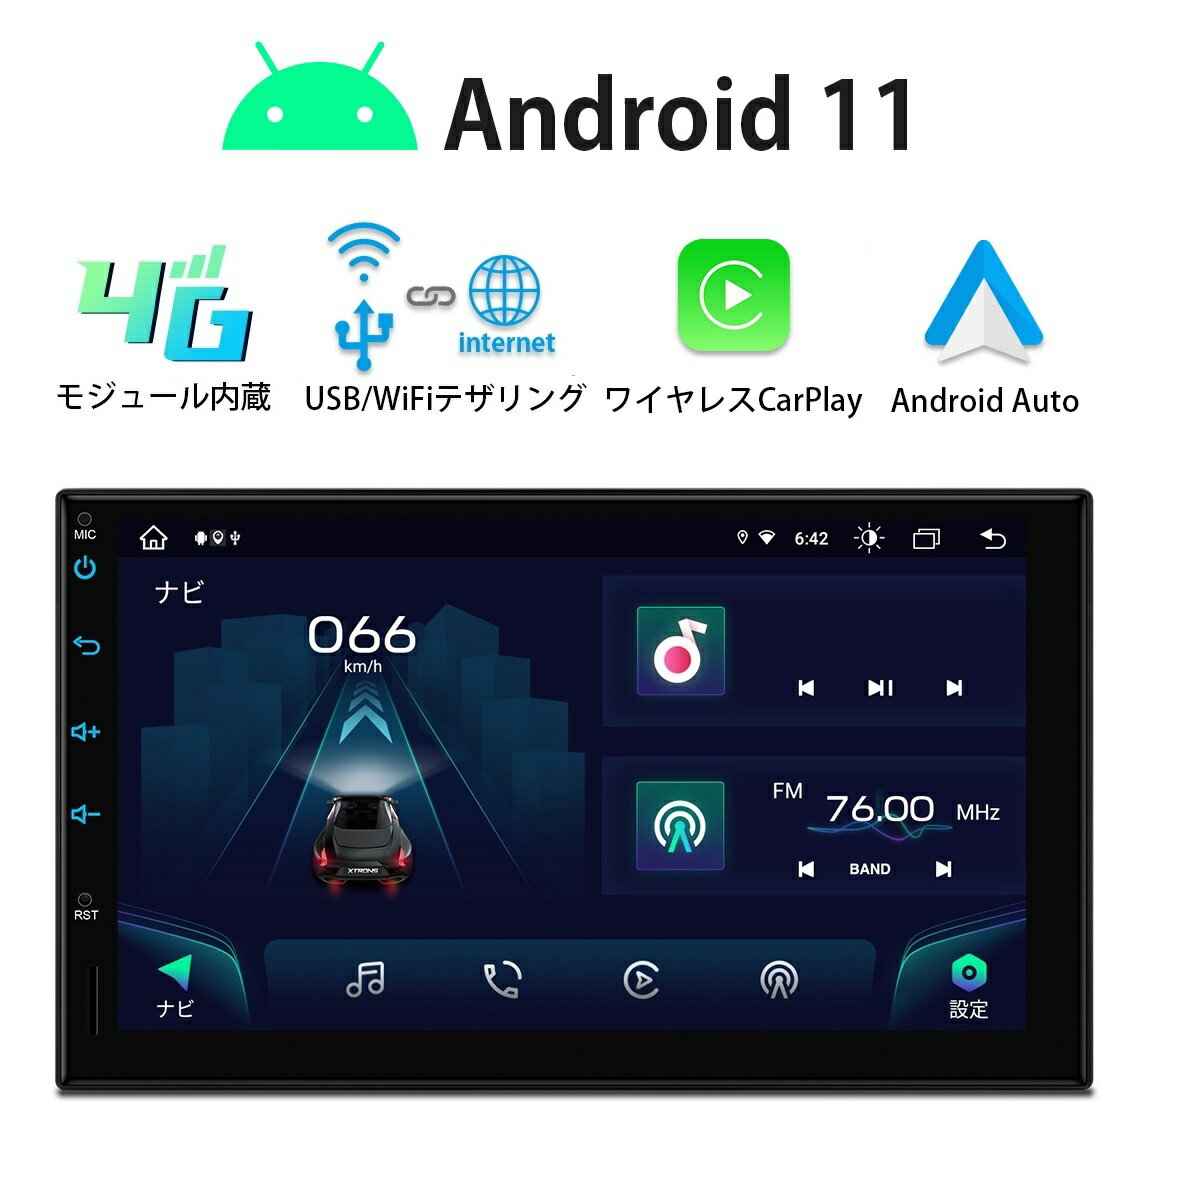 楽天XTRONS マイカーライフ専門店カーナビ 2DIN Android11 車載PC 7インチ XTRONS カーオーディオ 2022新機種 4G通信対応 8コア 4GB+64GB iPhone CarPlay対応 android auto対応 ミラーリング WiFi USBテザリング Bluetooth（TIA723LS）